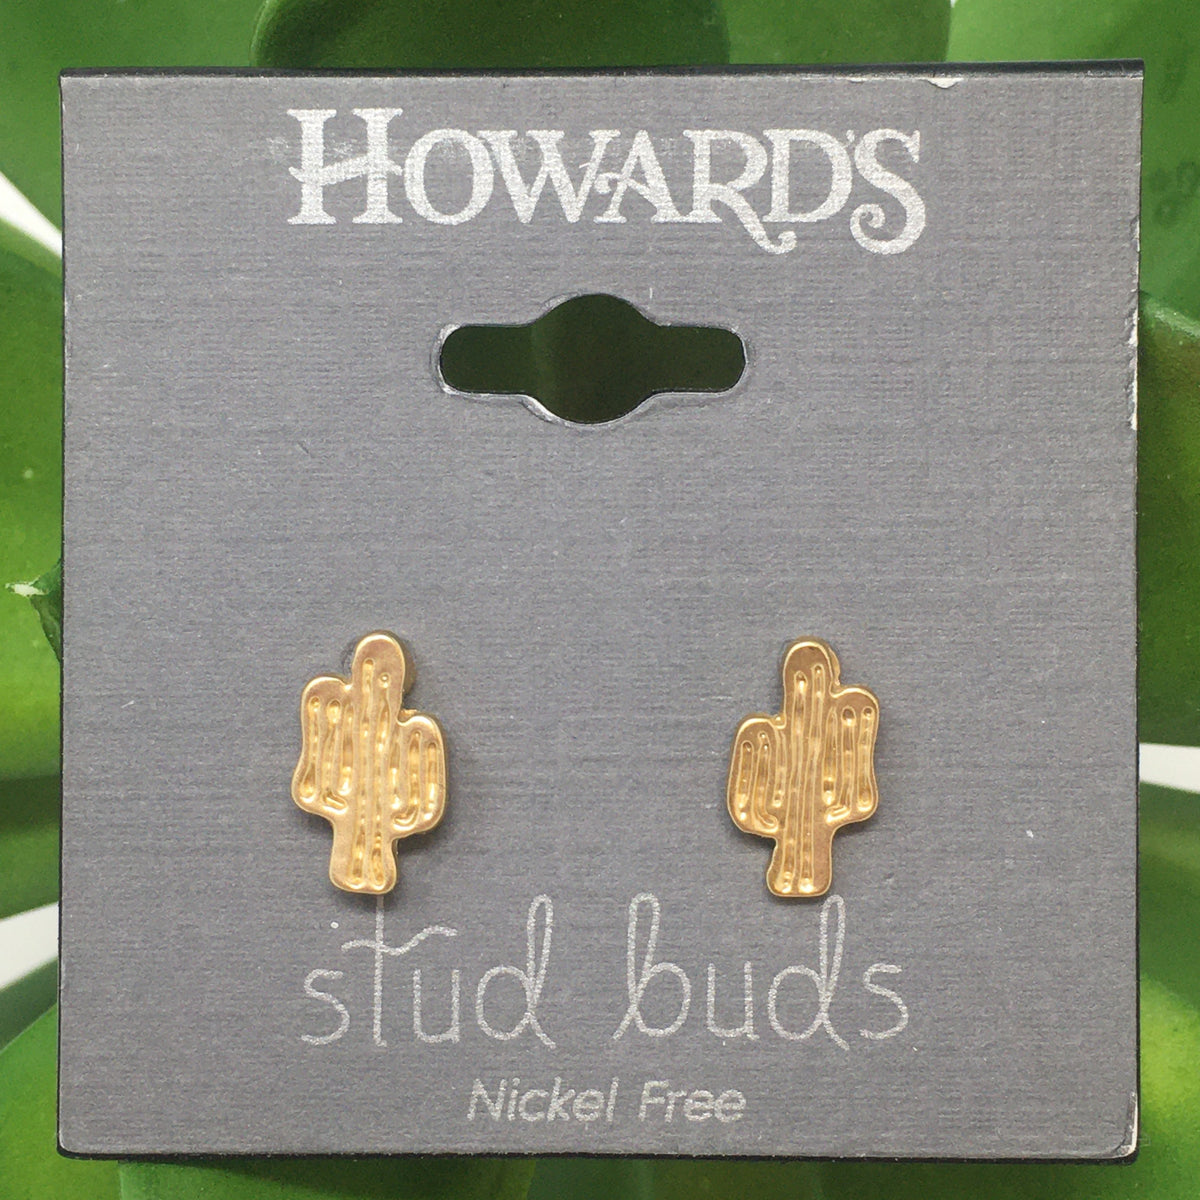 Cactus Stud Bud Earrings